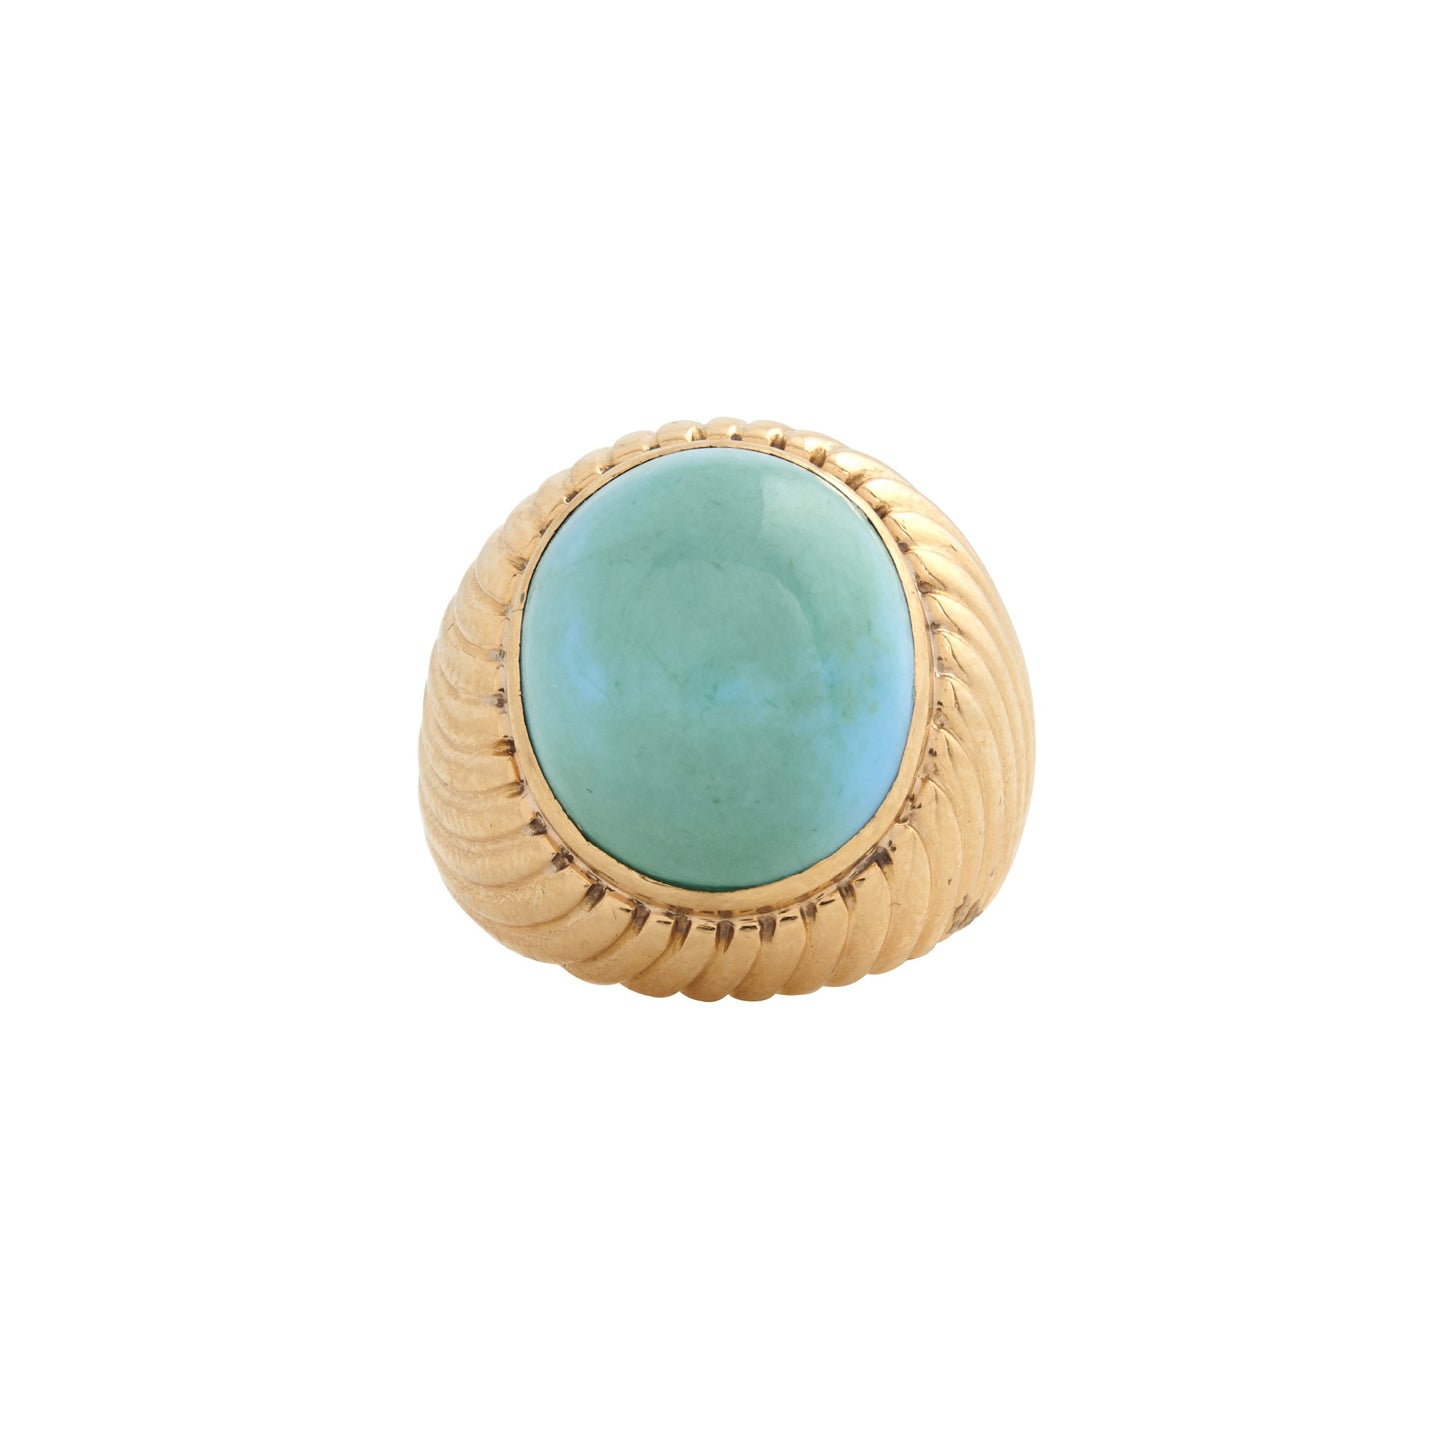 Van Cleef & Arpels Turquoise Ring